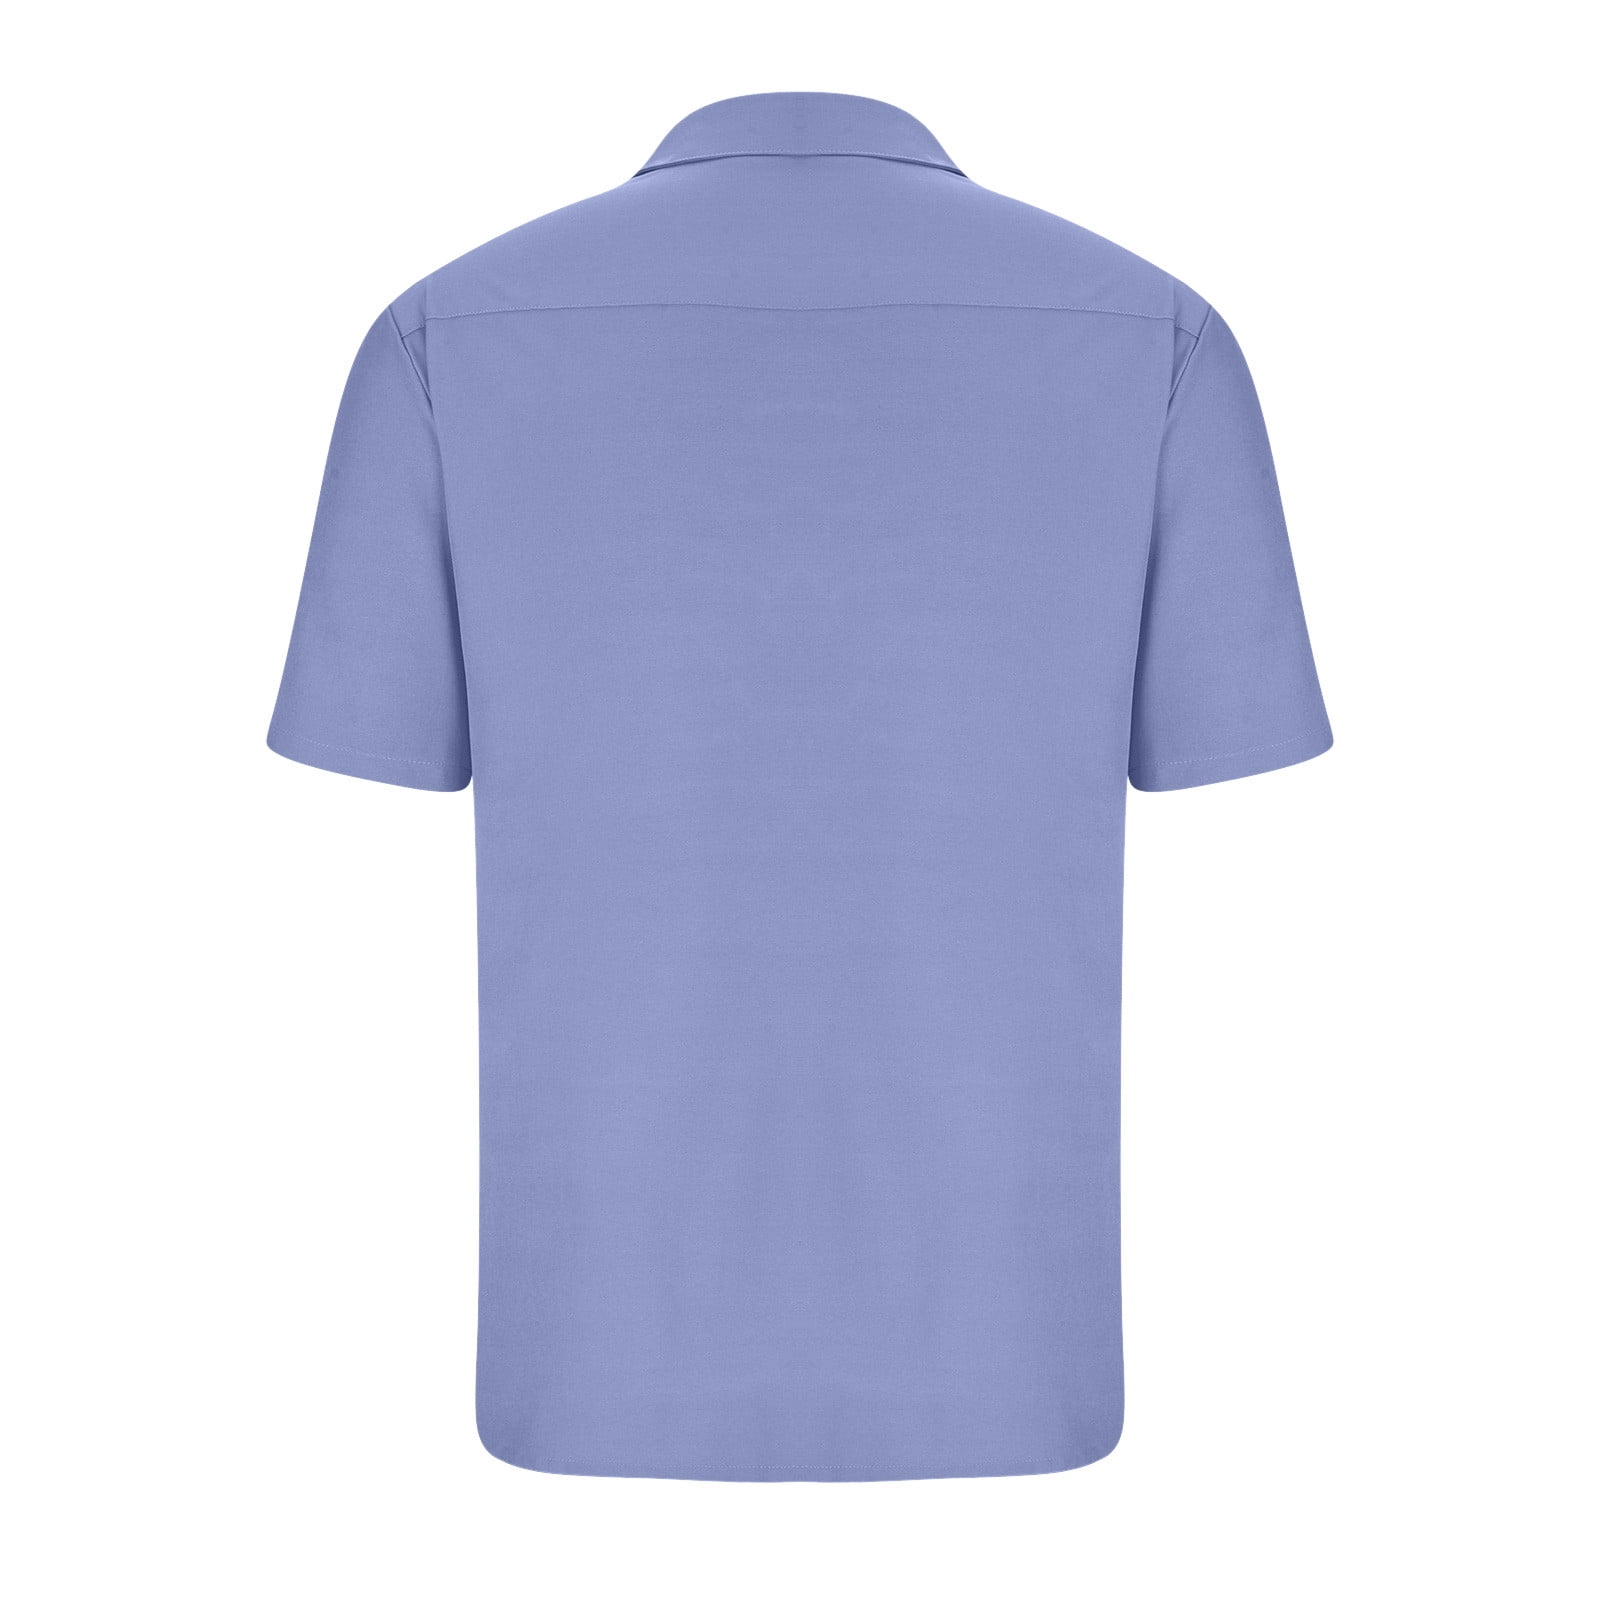 RYRJJ Men's Short Sleeve Button Up Linen Shirts Summer Casual Pocket Beach  Dress Shirts(Blue,S) 